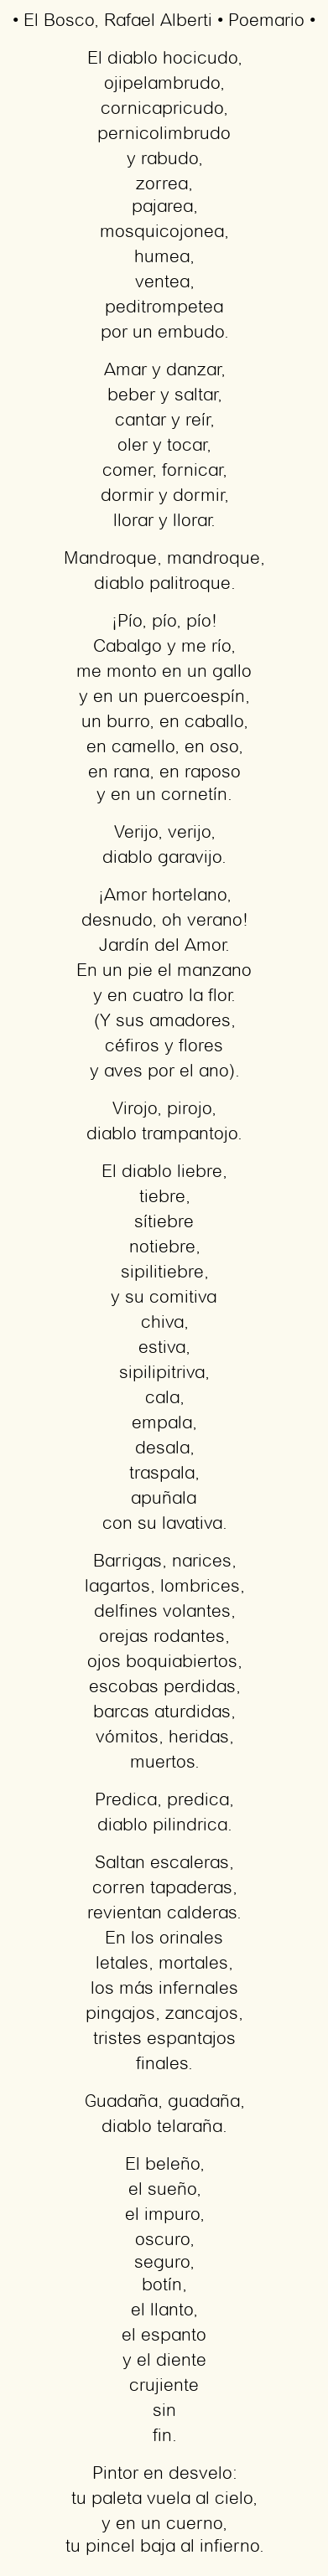 Imagen con el poema El Bosco, por Rafael Alberti